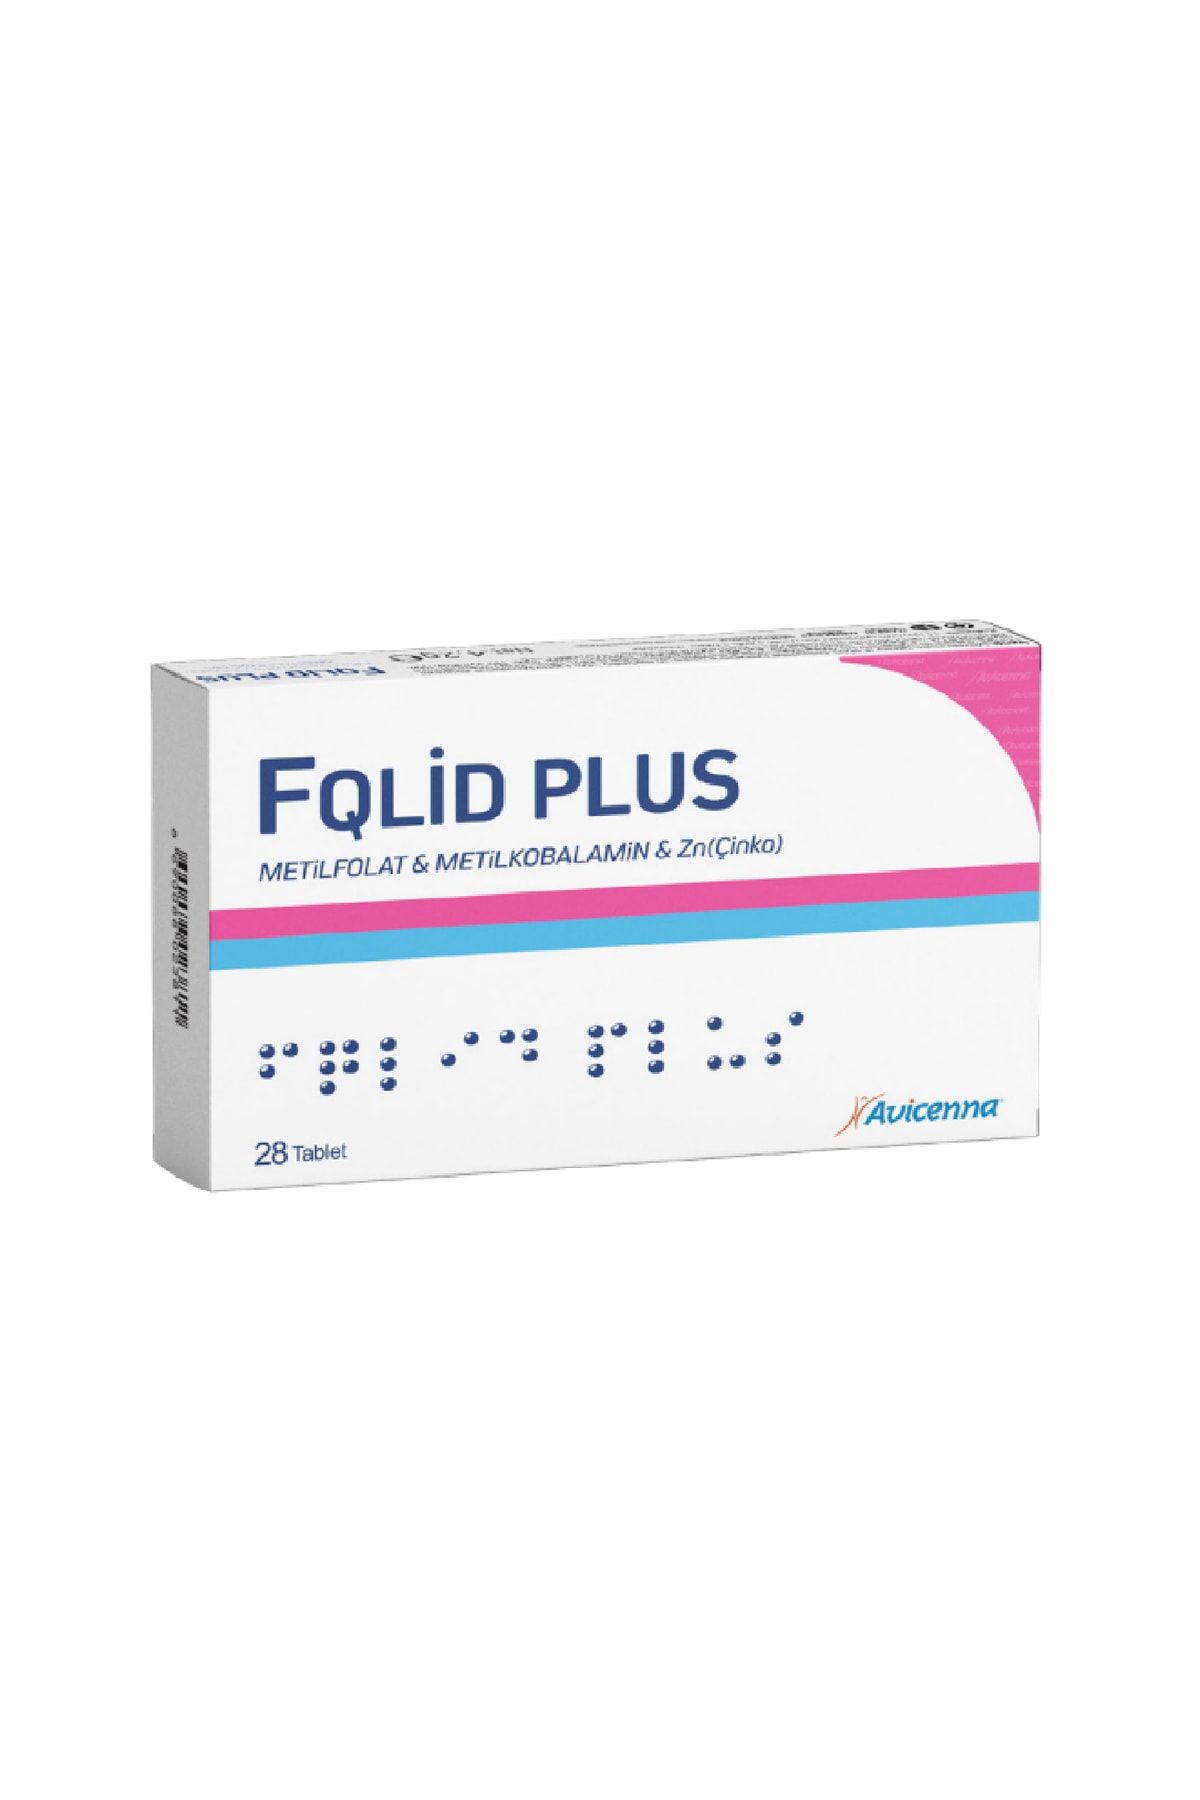 Avicenna Fqlid Plus - Metilfolat, Metilkobalamin Ve Çinko Içeren Takviye Edici Gıda - 28 Tablet